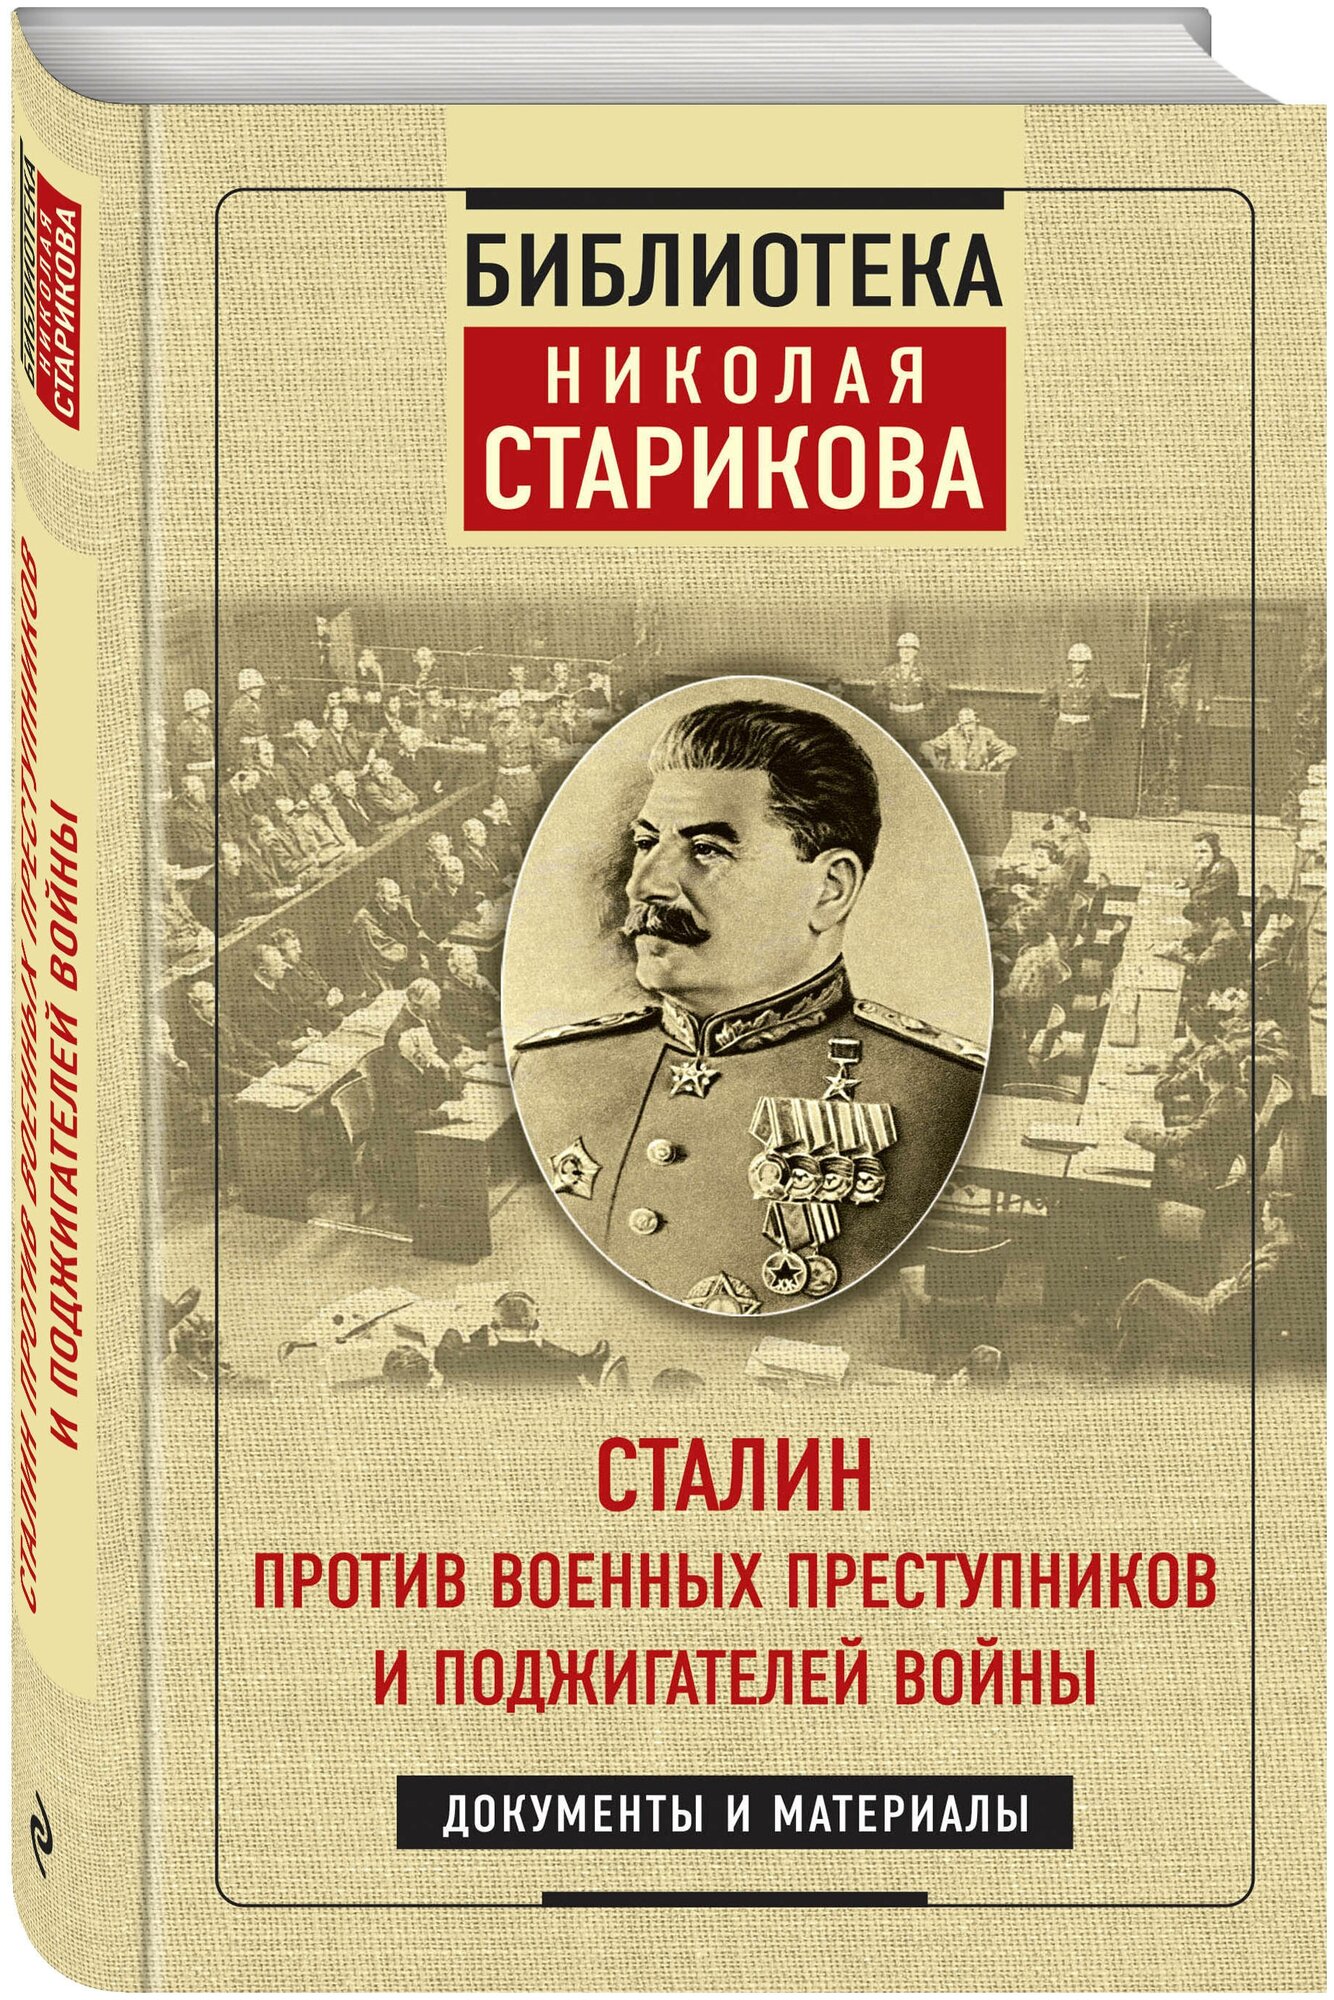 Сталин против военных преступников и поджигателей войны. Документы и материалы - фото №1